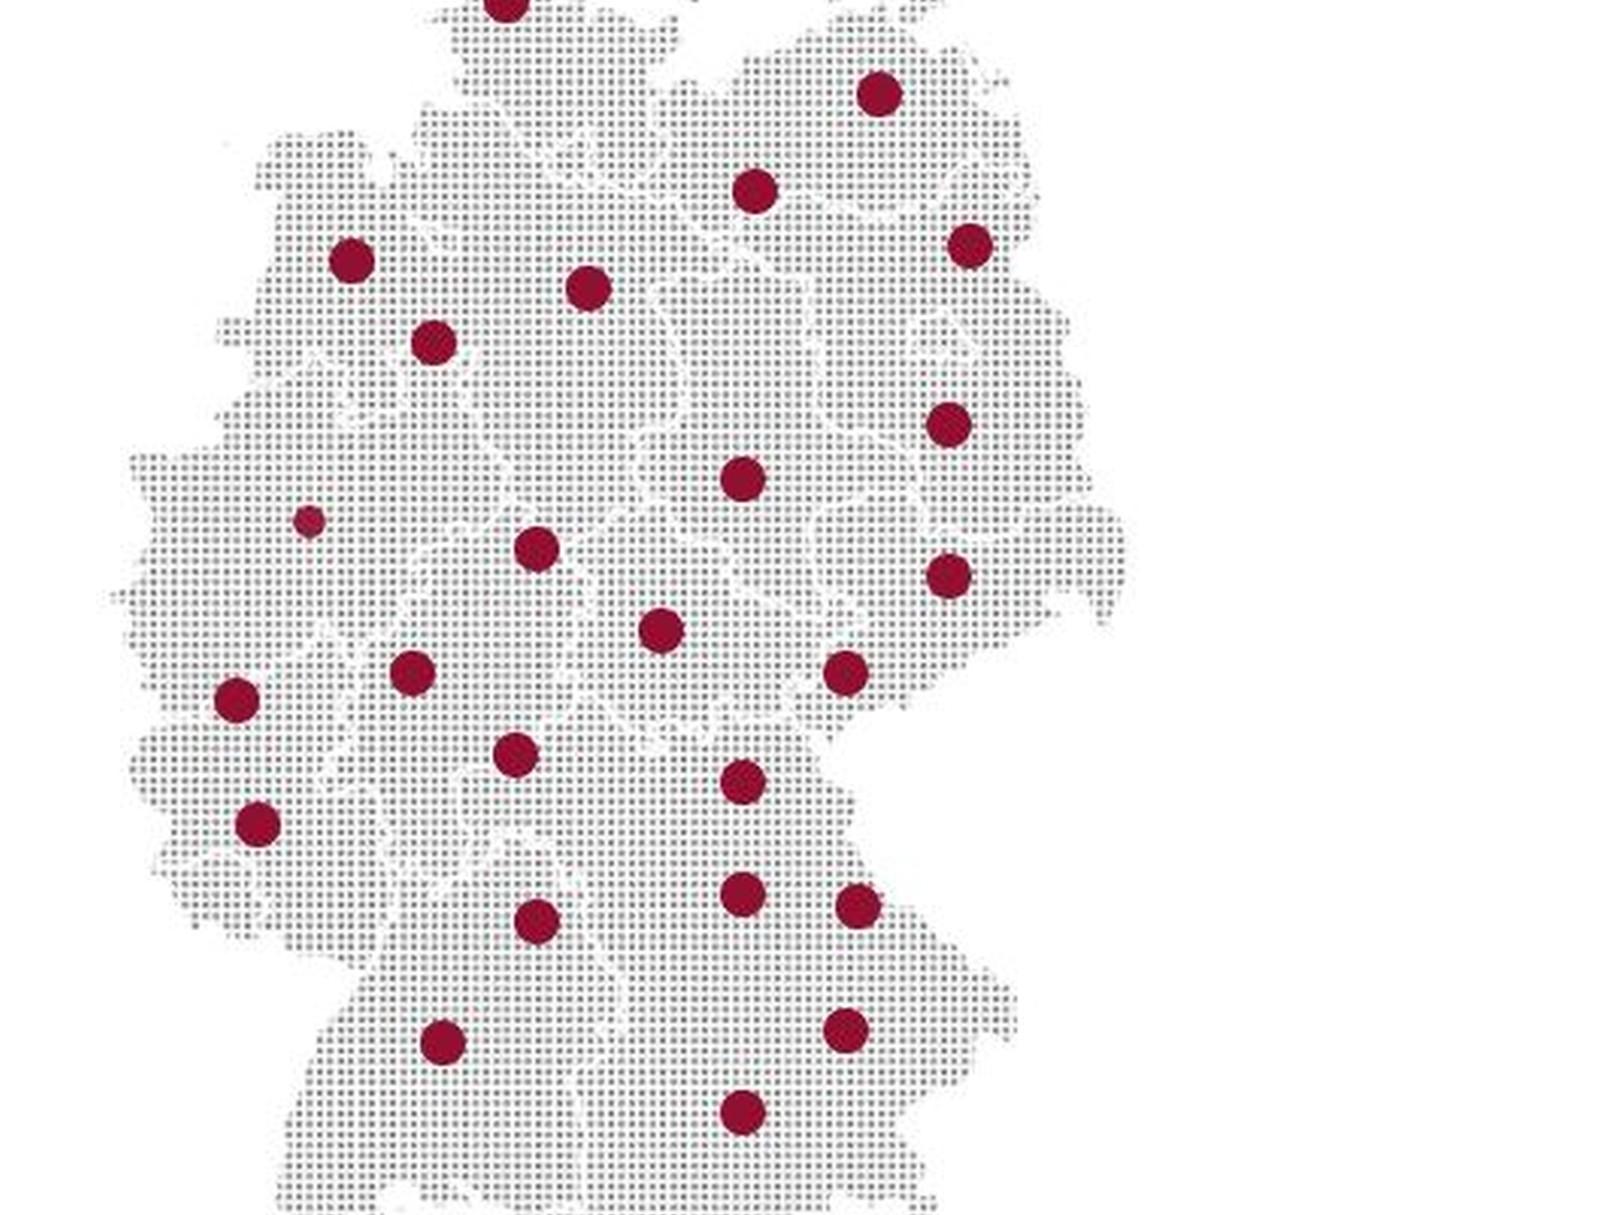 KI in Deutschland: Erweiterte Landkarte liefert Überblick zu Forschung, Anwendungen und Transfer